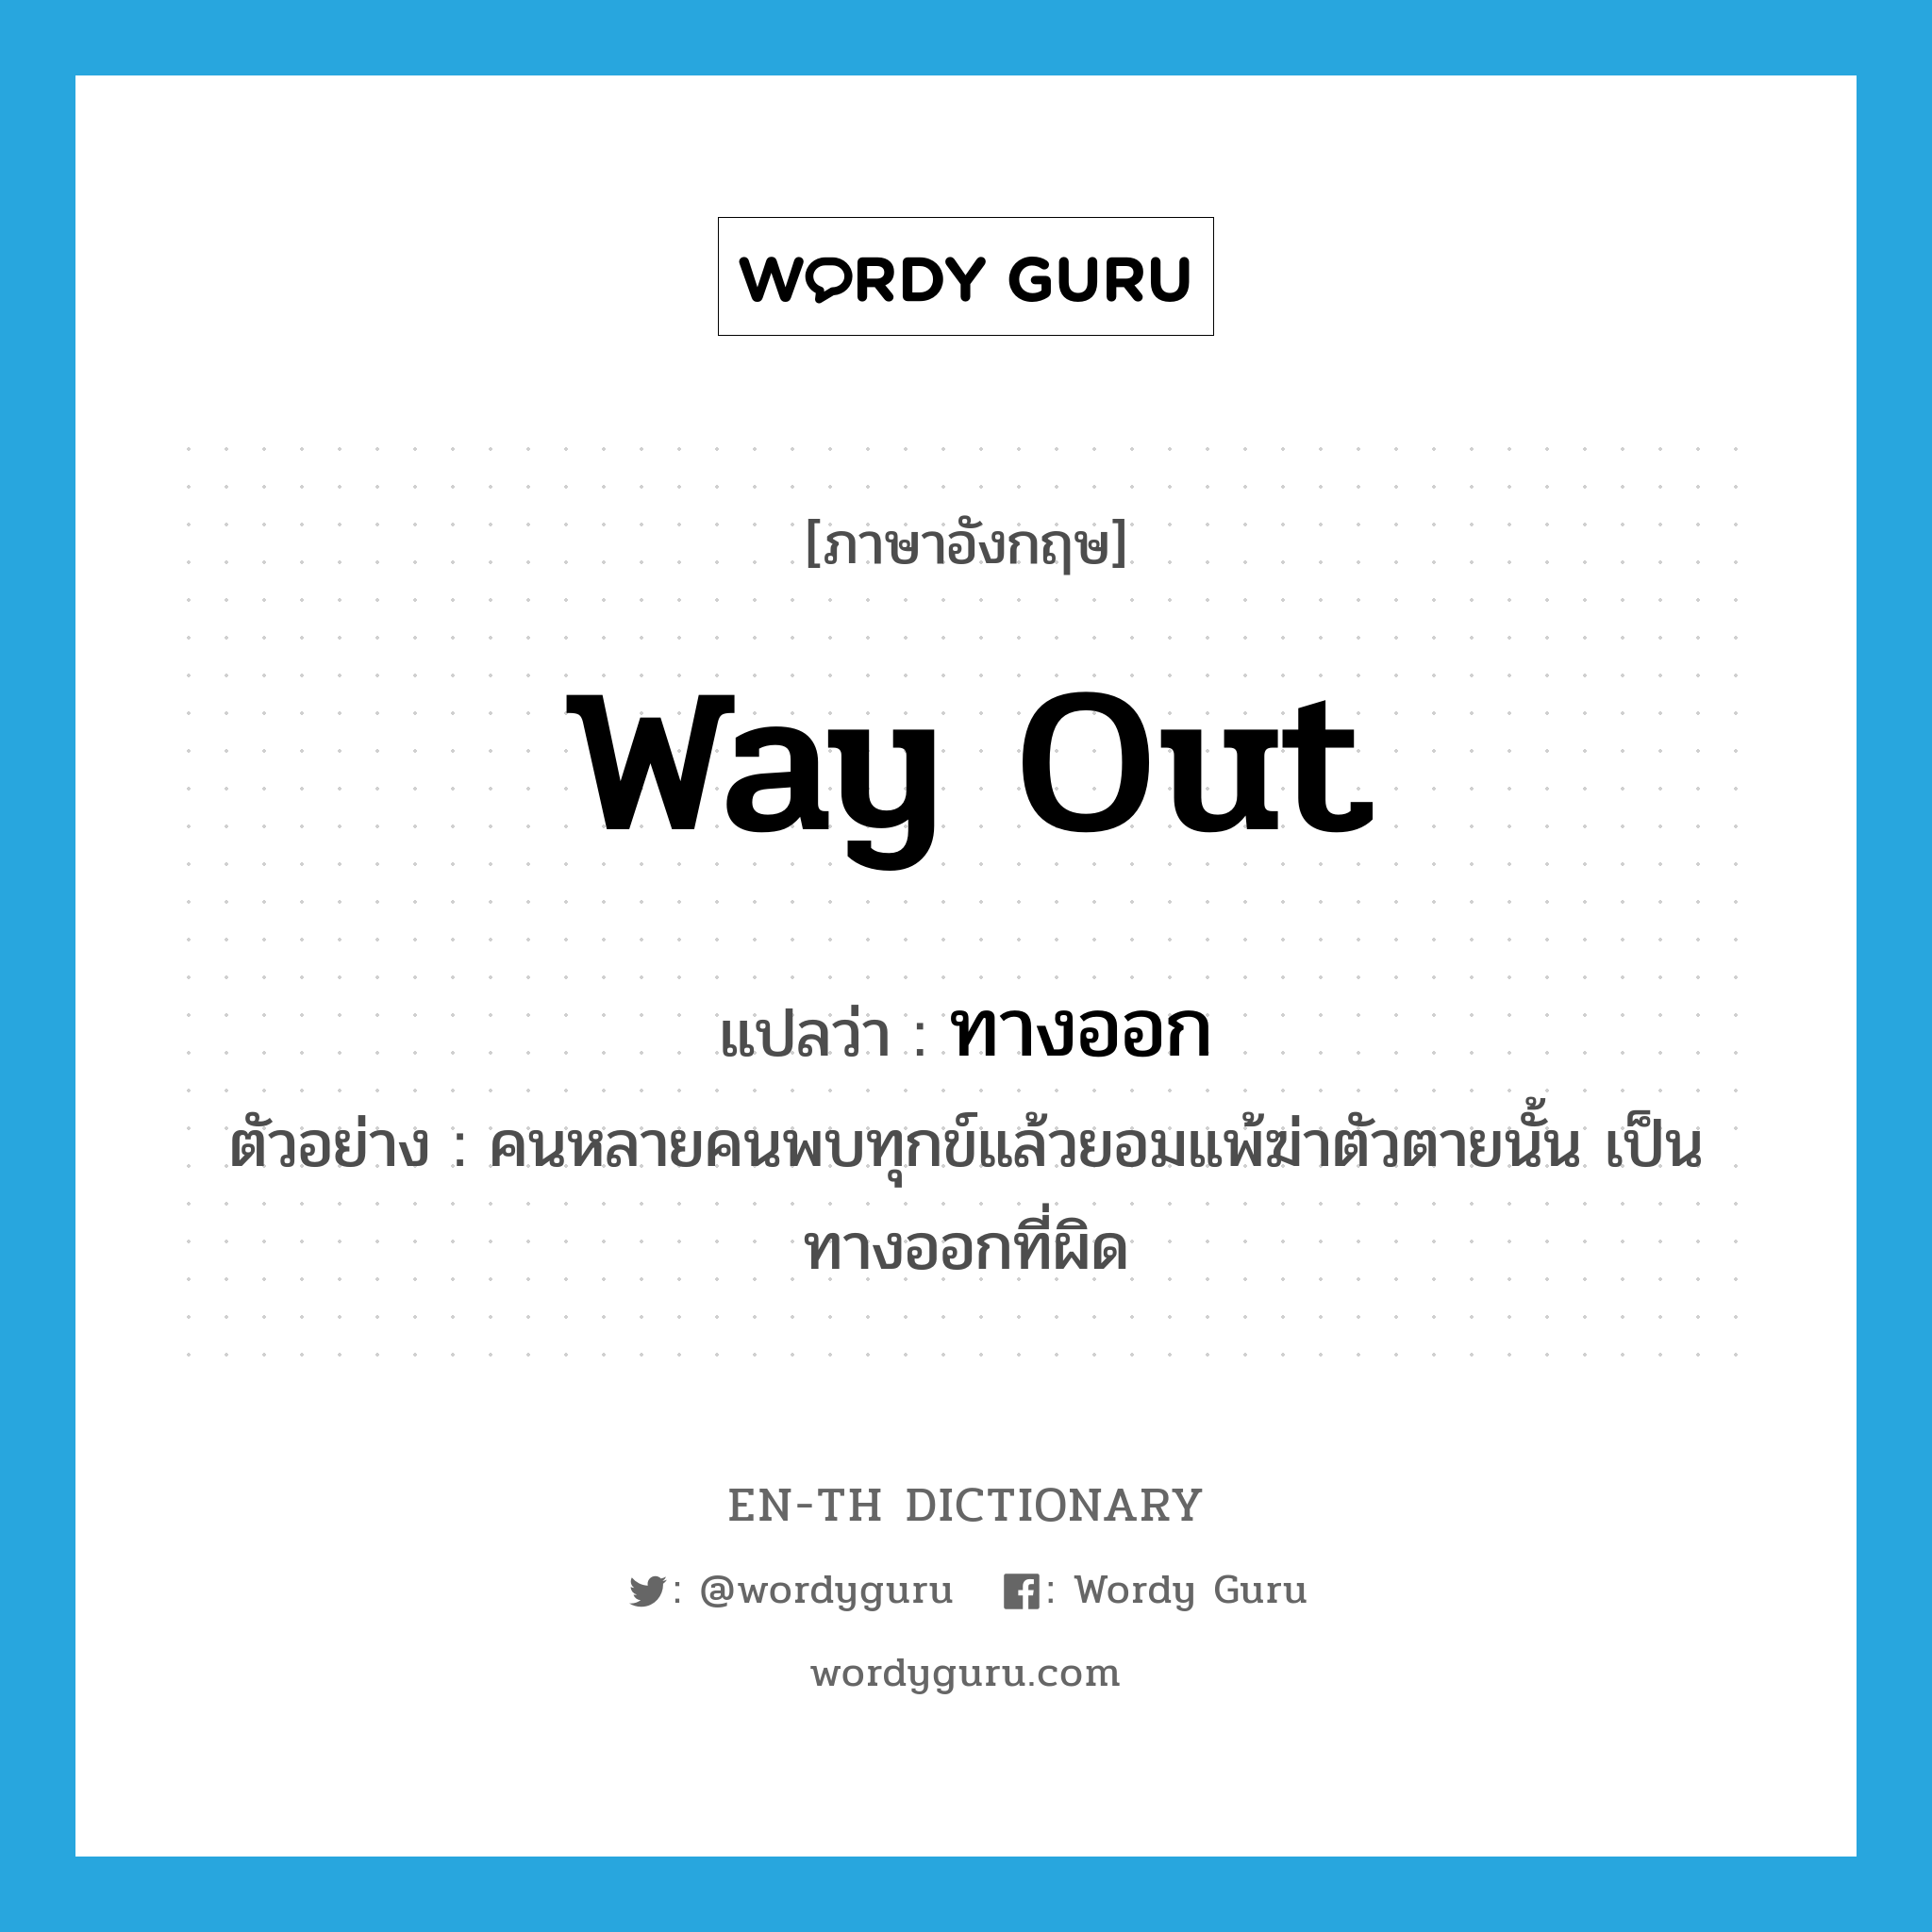 way out แปลว่า?, คำศัพท์ภาษาอังกฤษ way out แปลว่า ทางออก ประเภท N ตัวอย่าง คนหลายคนพบทุกข์แล้วยอมแพ้ฆ่าตัวตายนั้น เป็นทางออกที่ผิด หมวด N